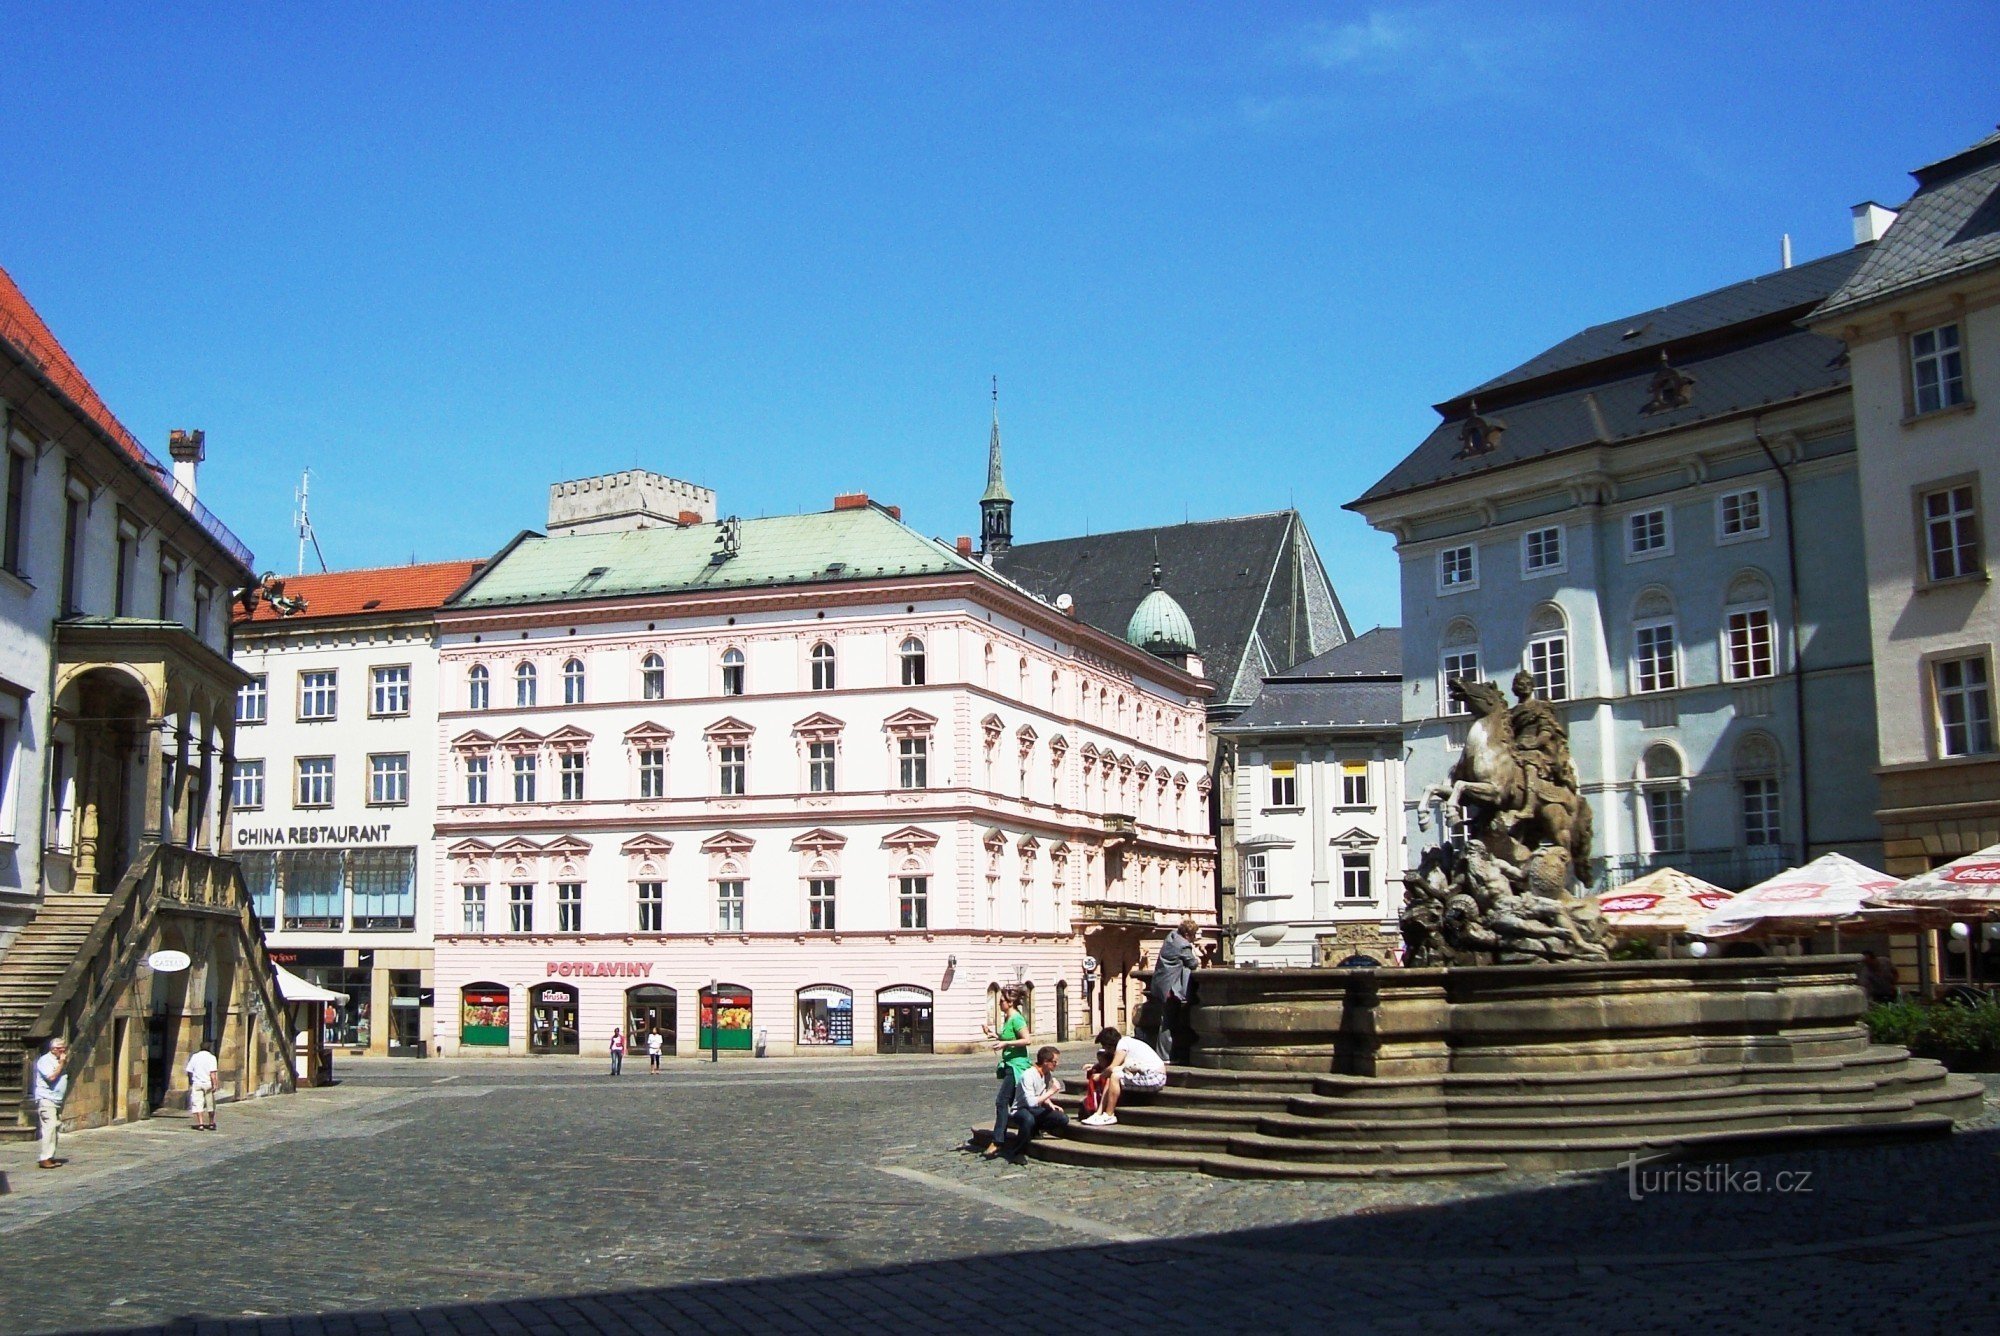 Olomouc-Horní náměstí-Cezarjev vodnjak iz leta 1725 in nekdanja palača Dietrichstein-Fo